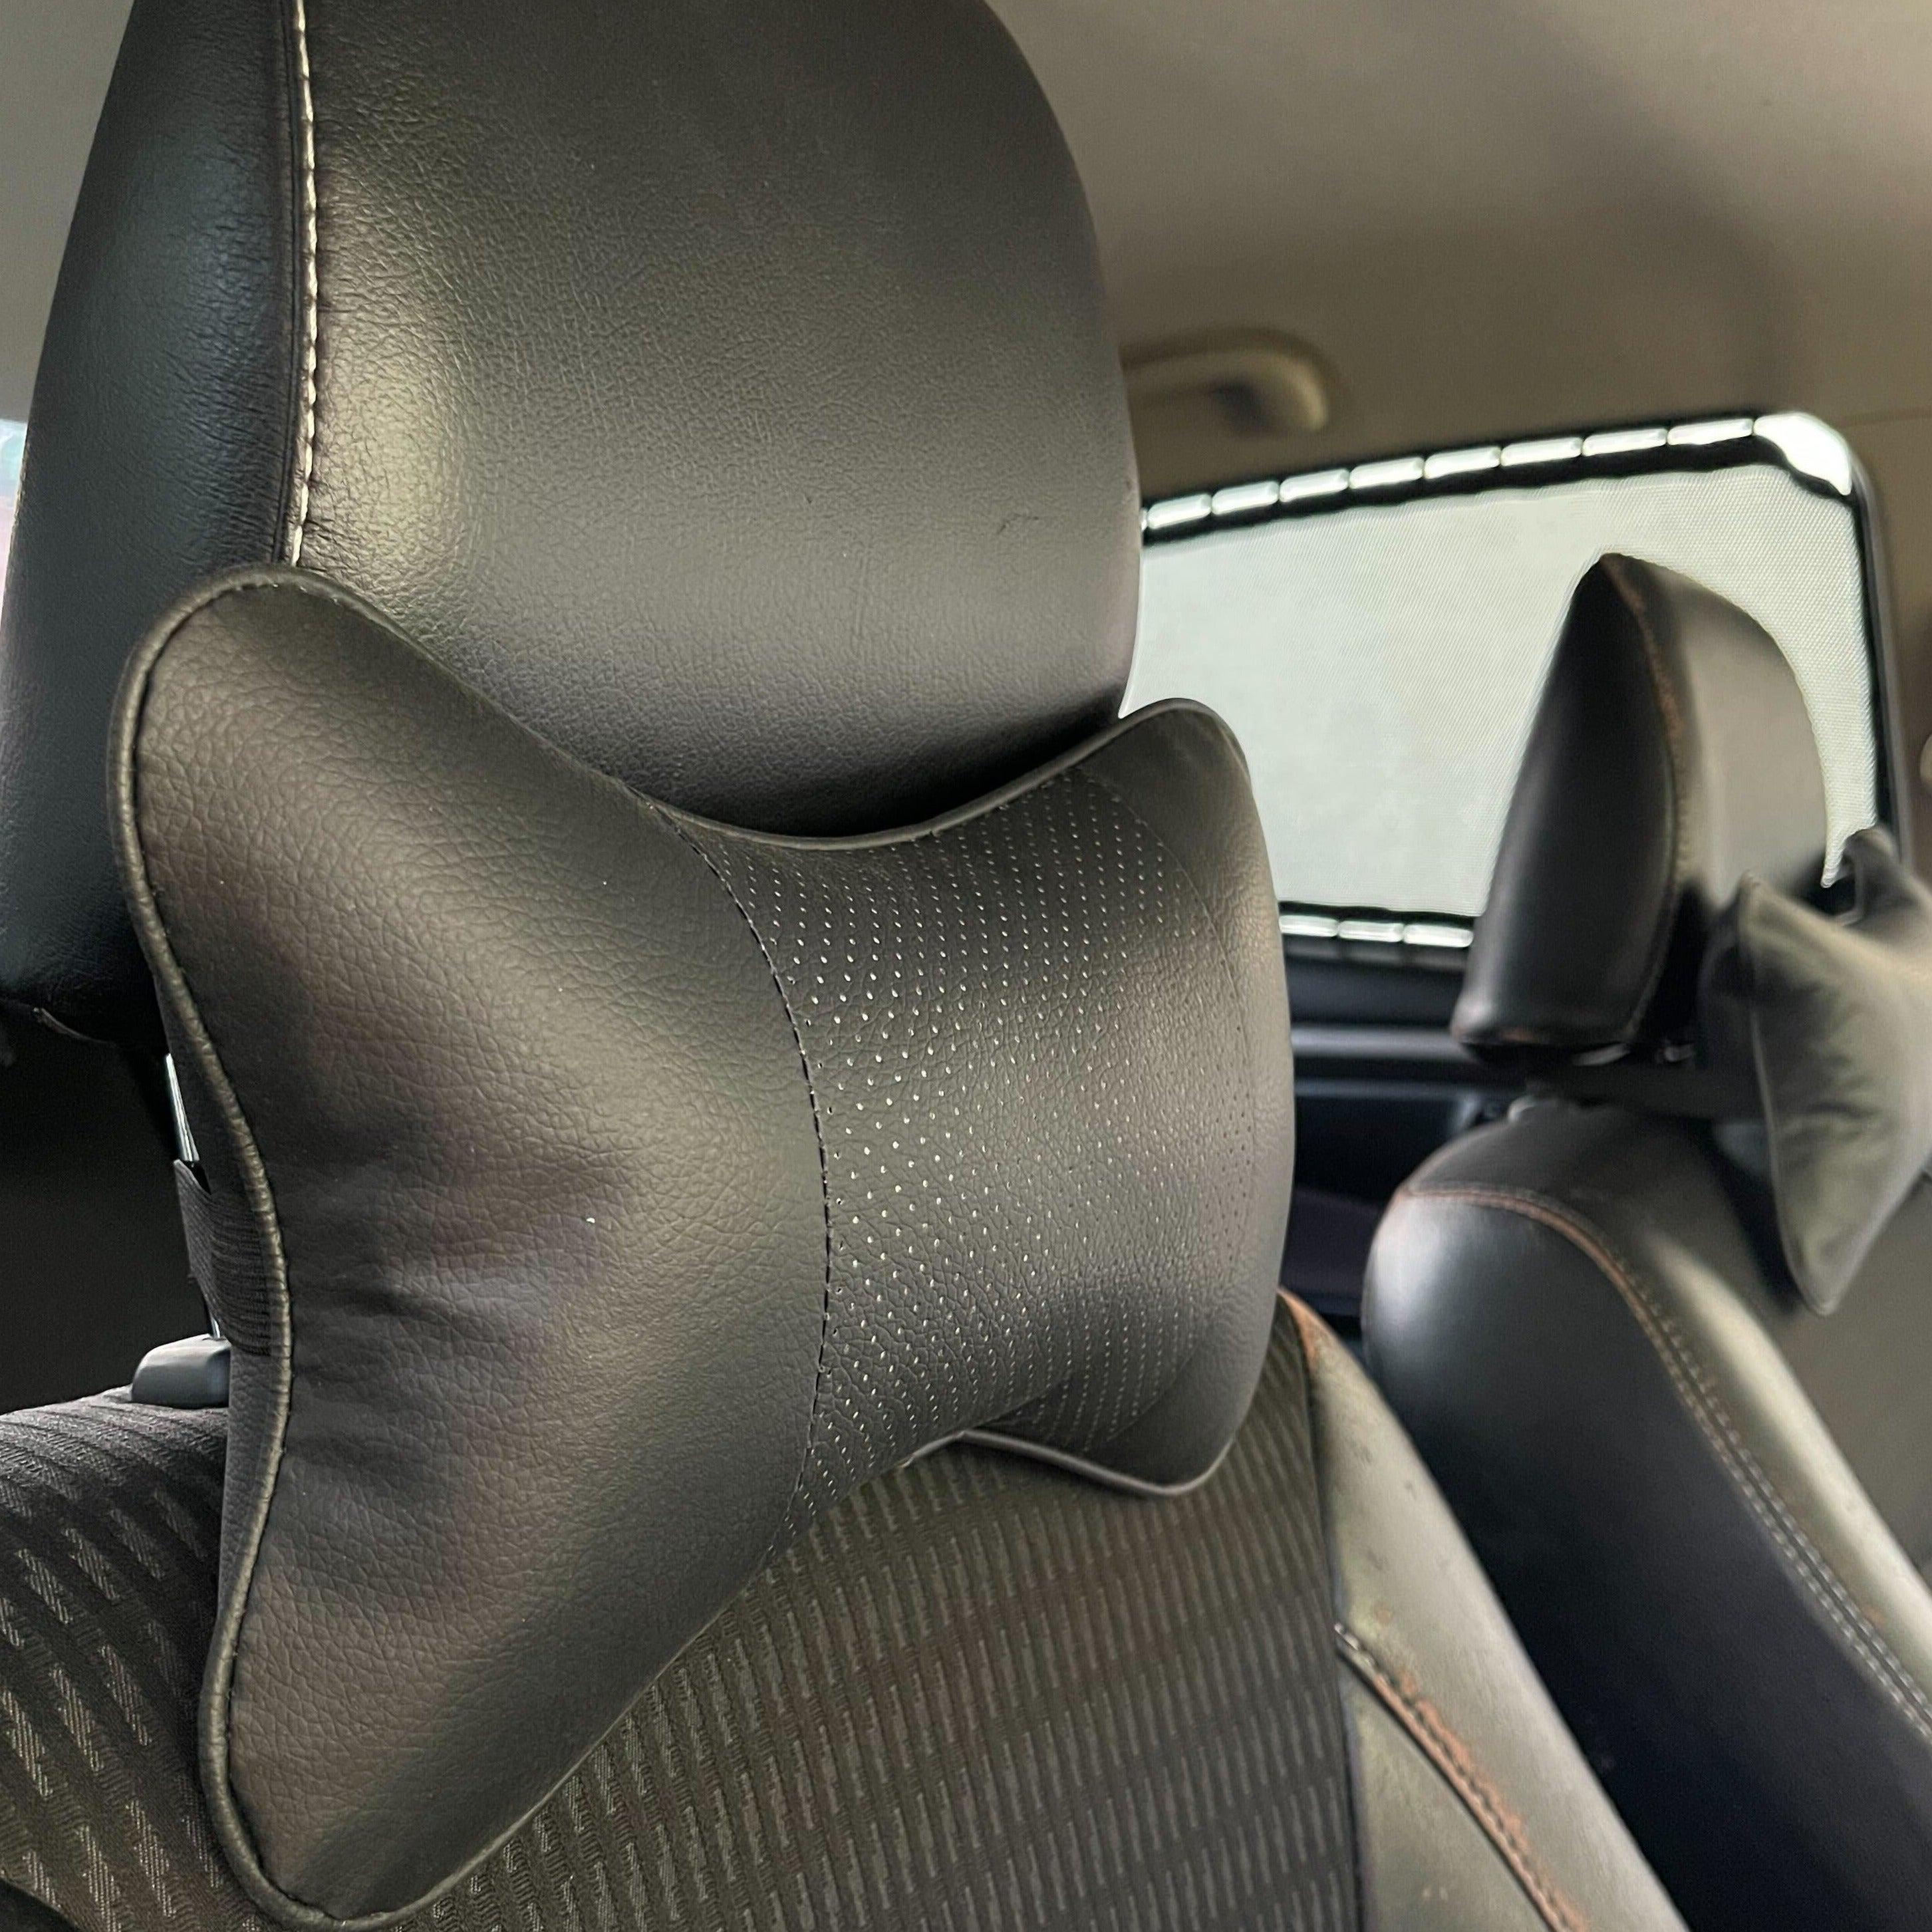 2 PCS Car Seat Neck Pillow